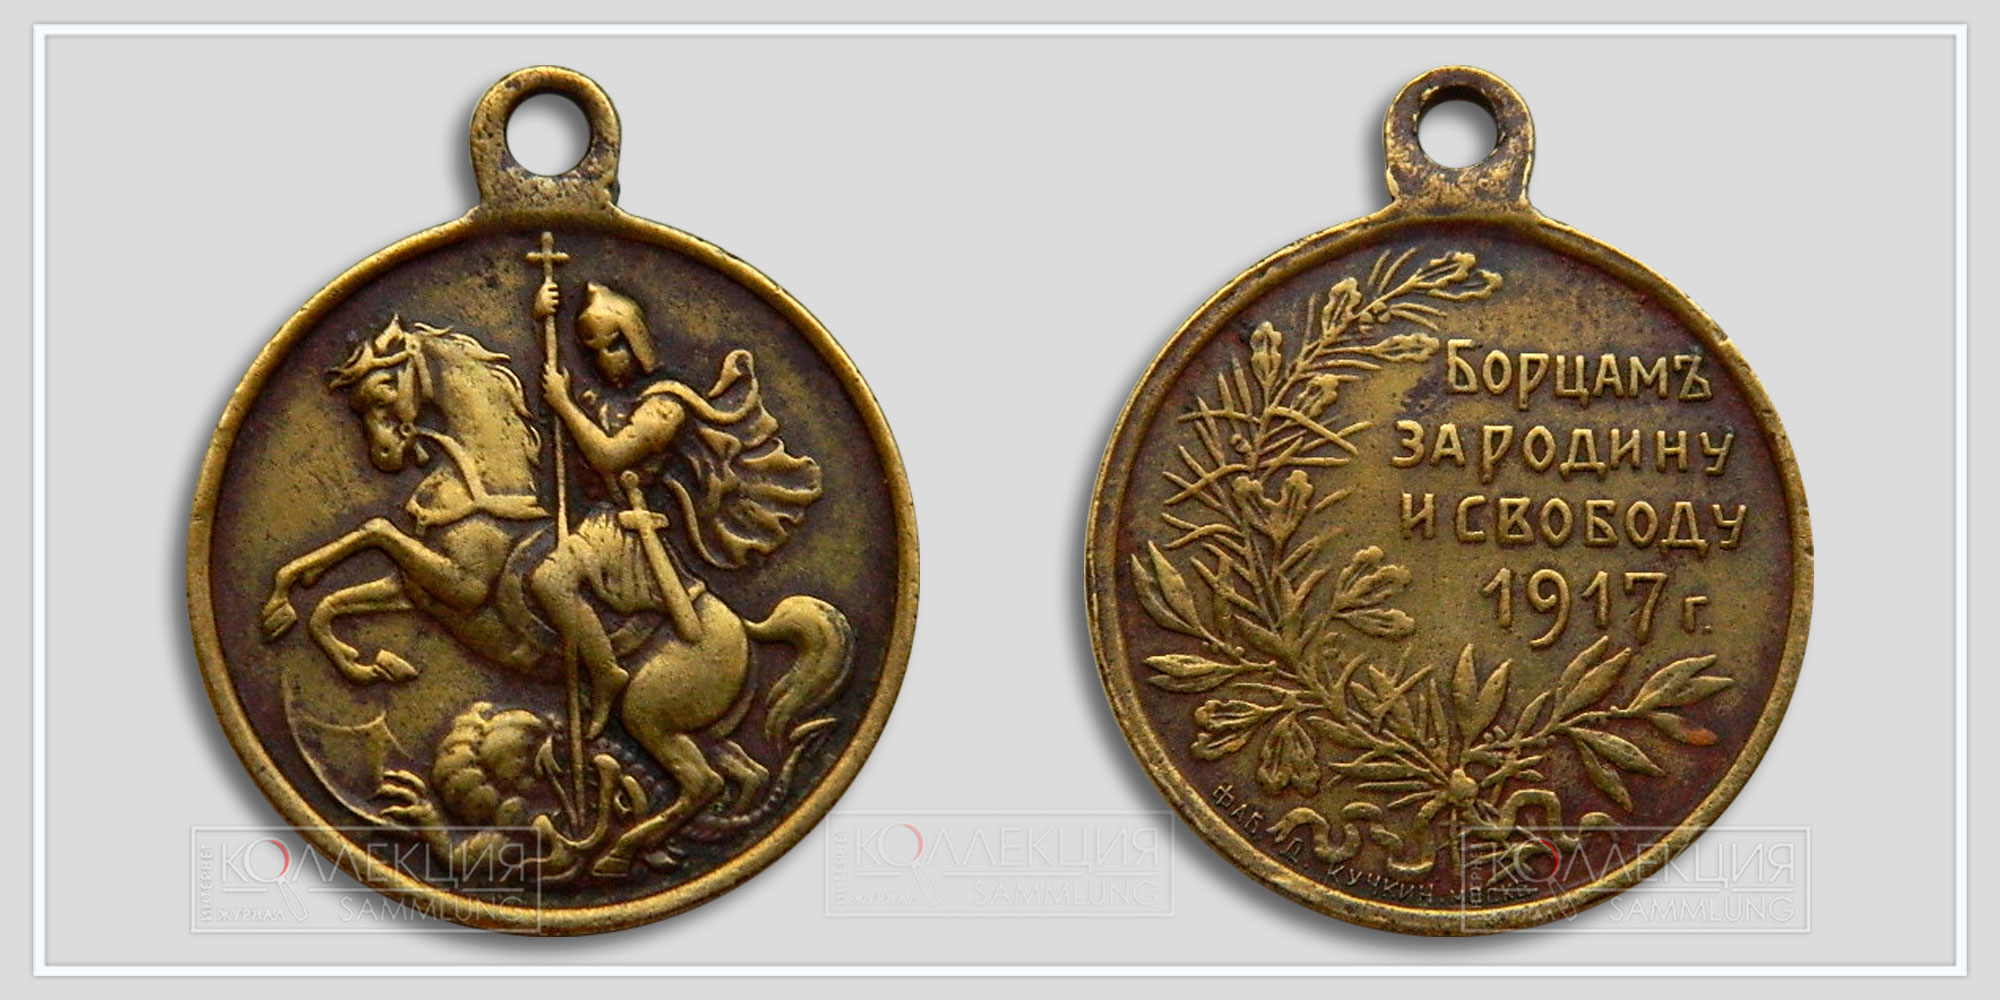 Медаль (жетон) "Борцам за Родину и свободу" Временное правительство (Из архива Фалеристика.инфо)